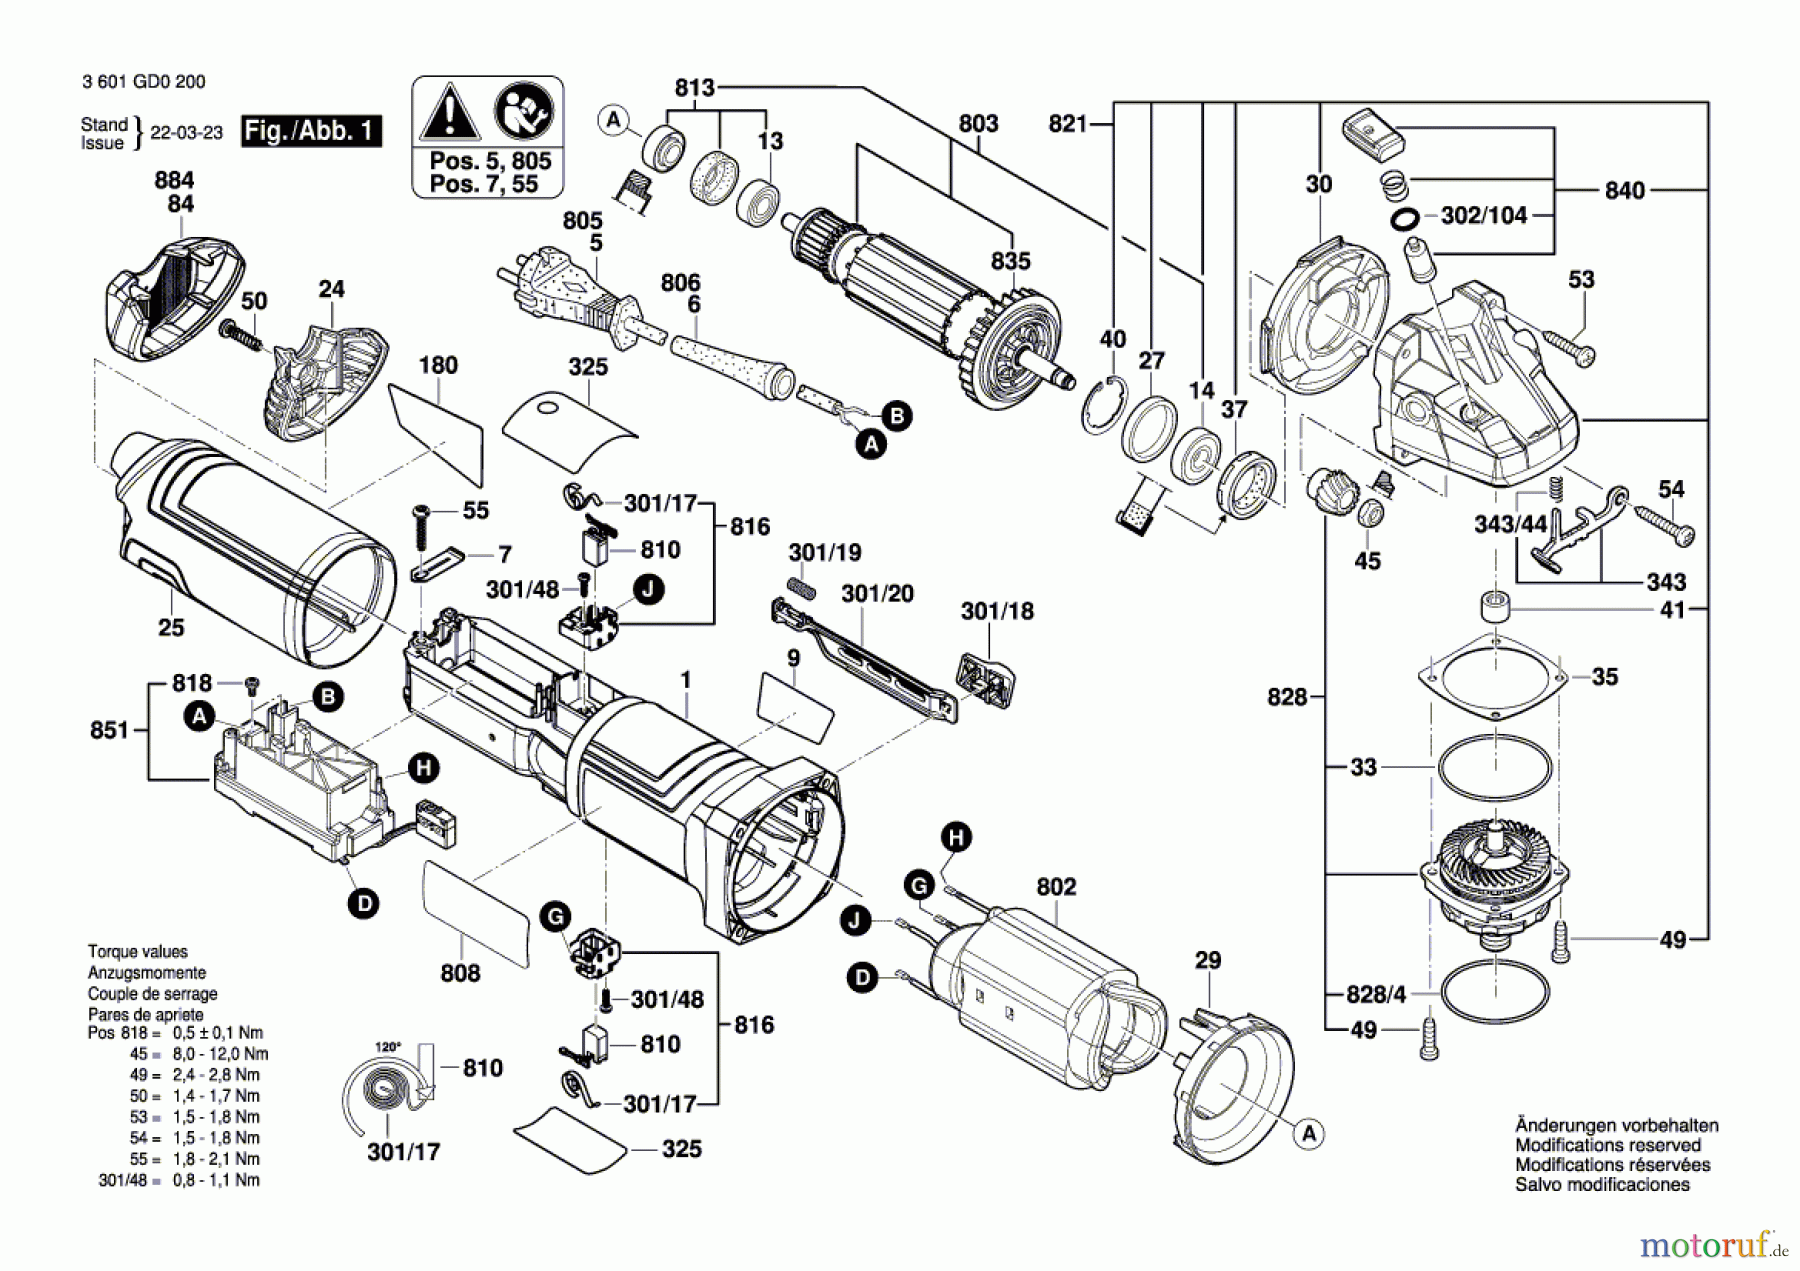  Bosch Werkzeug Winkelschleifer GWS 17-125 Seite 1